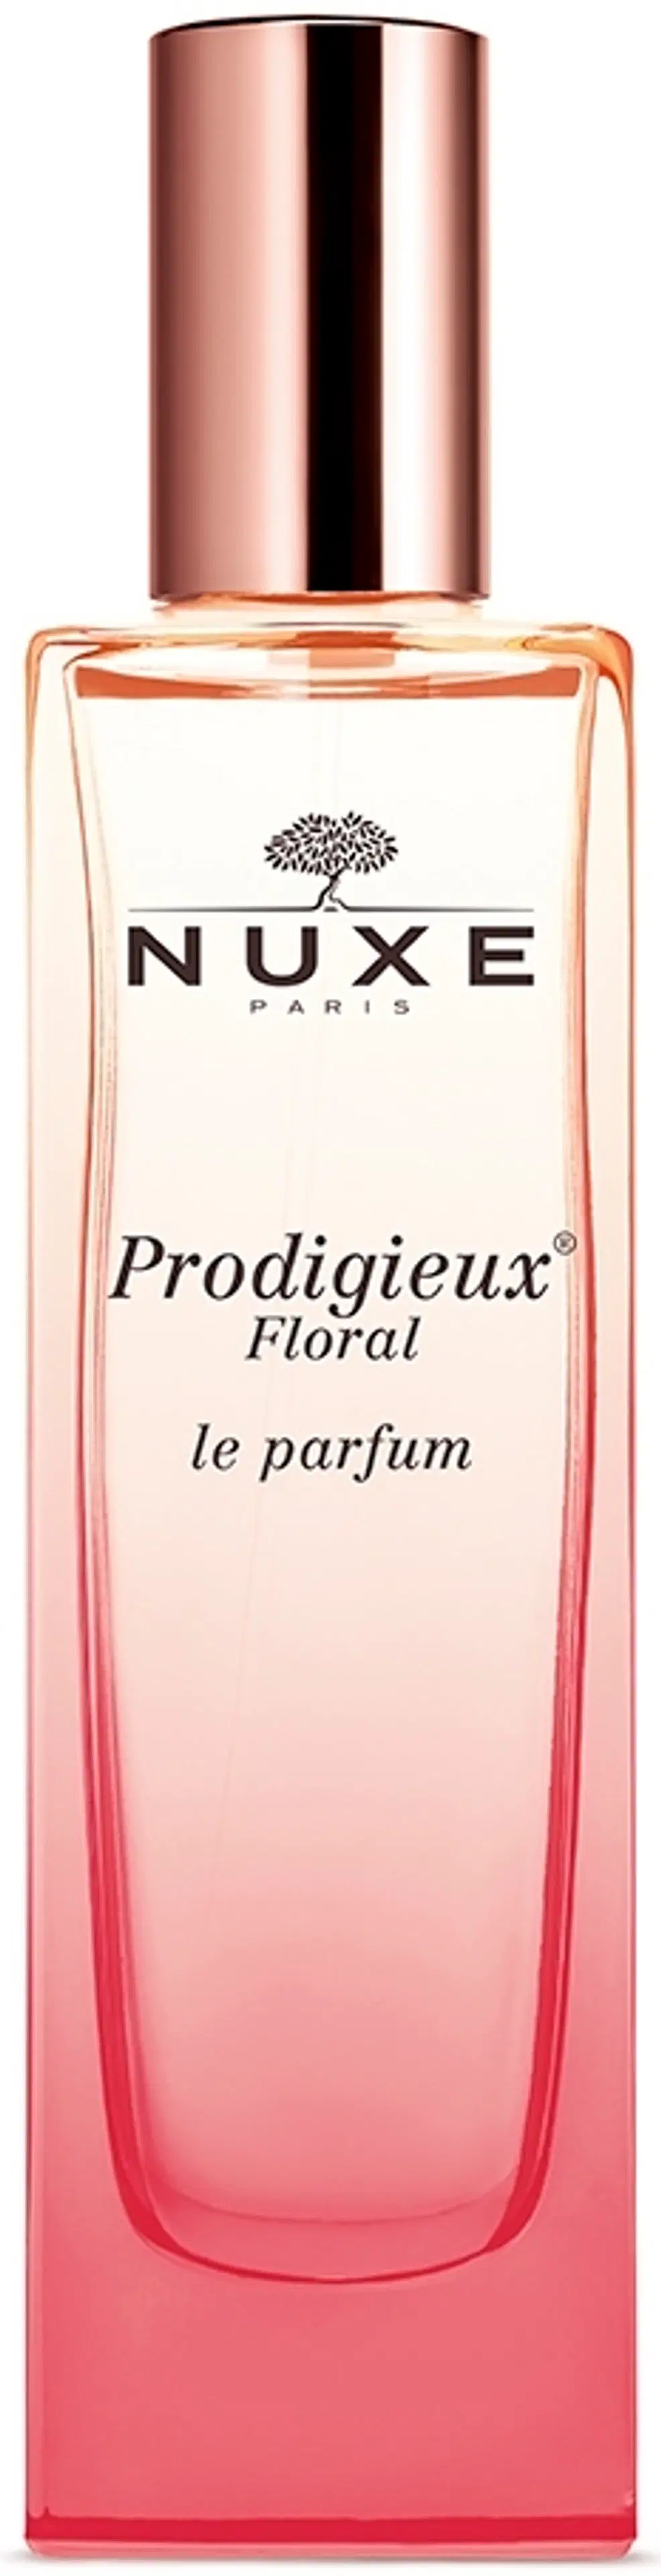 NUXE Prodigieux Floral le parfum tuoksu 50 ml